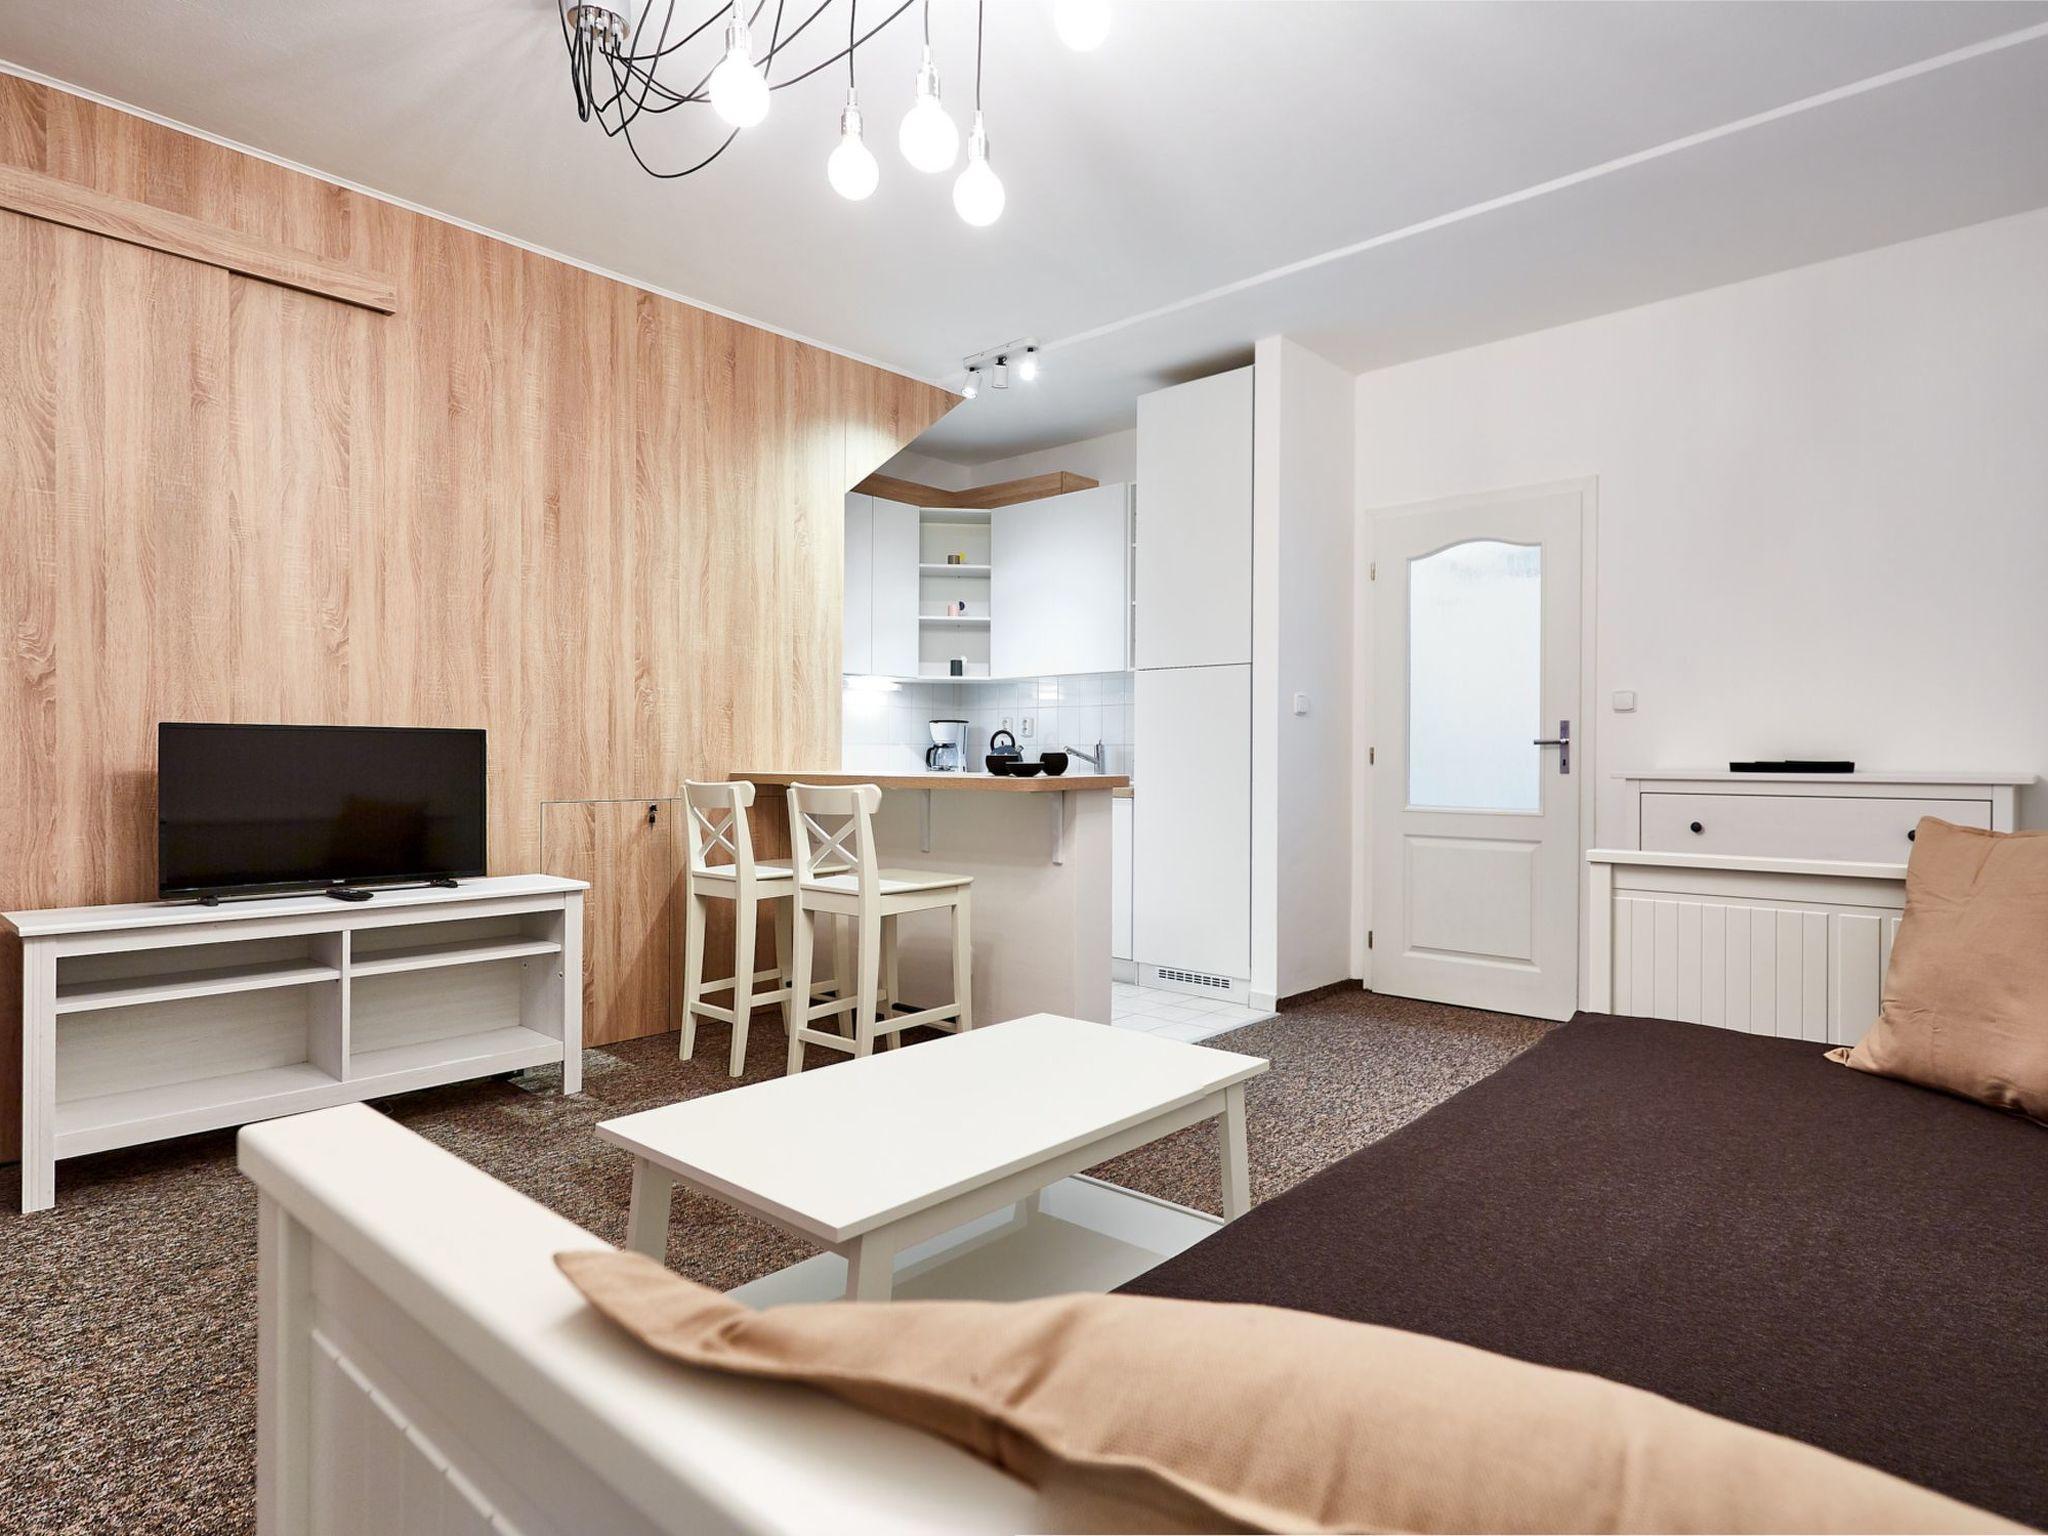 Foto 1 - Apartment mit 1 Schlafzimmer in Jáchymov